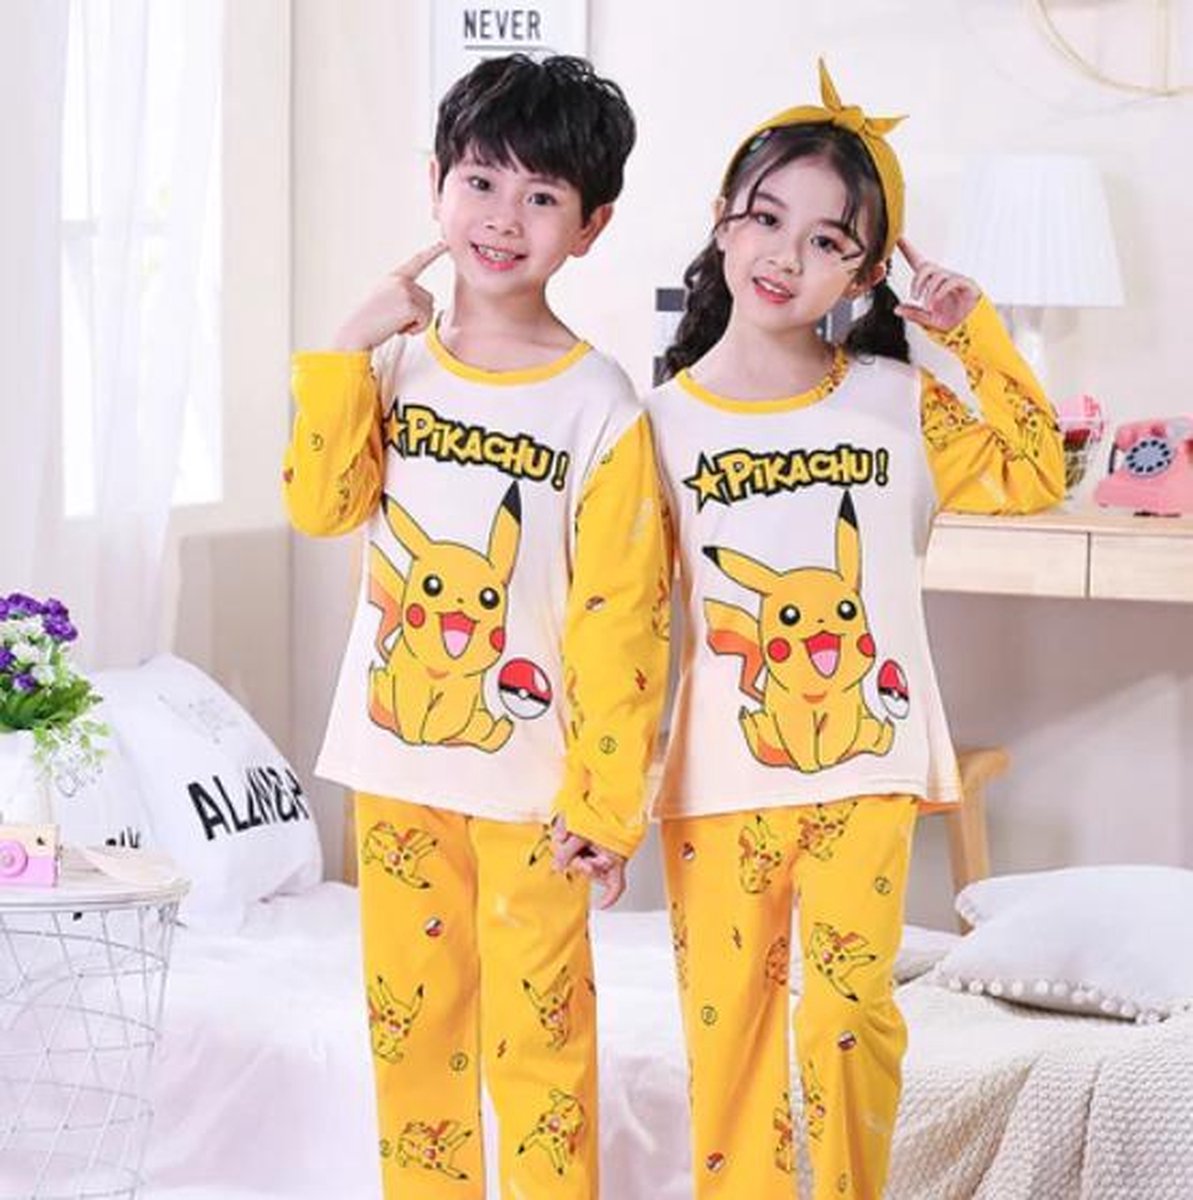 Cyberruimte Almachtig Aap Pokémon pyjama Pikachu - Pyjama - Pokémon - Kinderen - Slapen - Nachtkleding  | bol.com